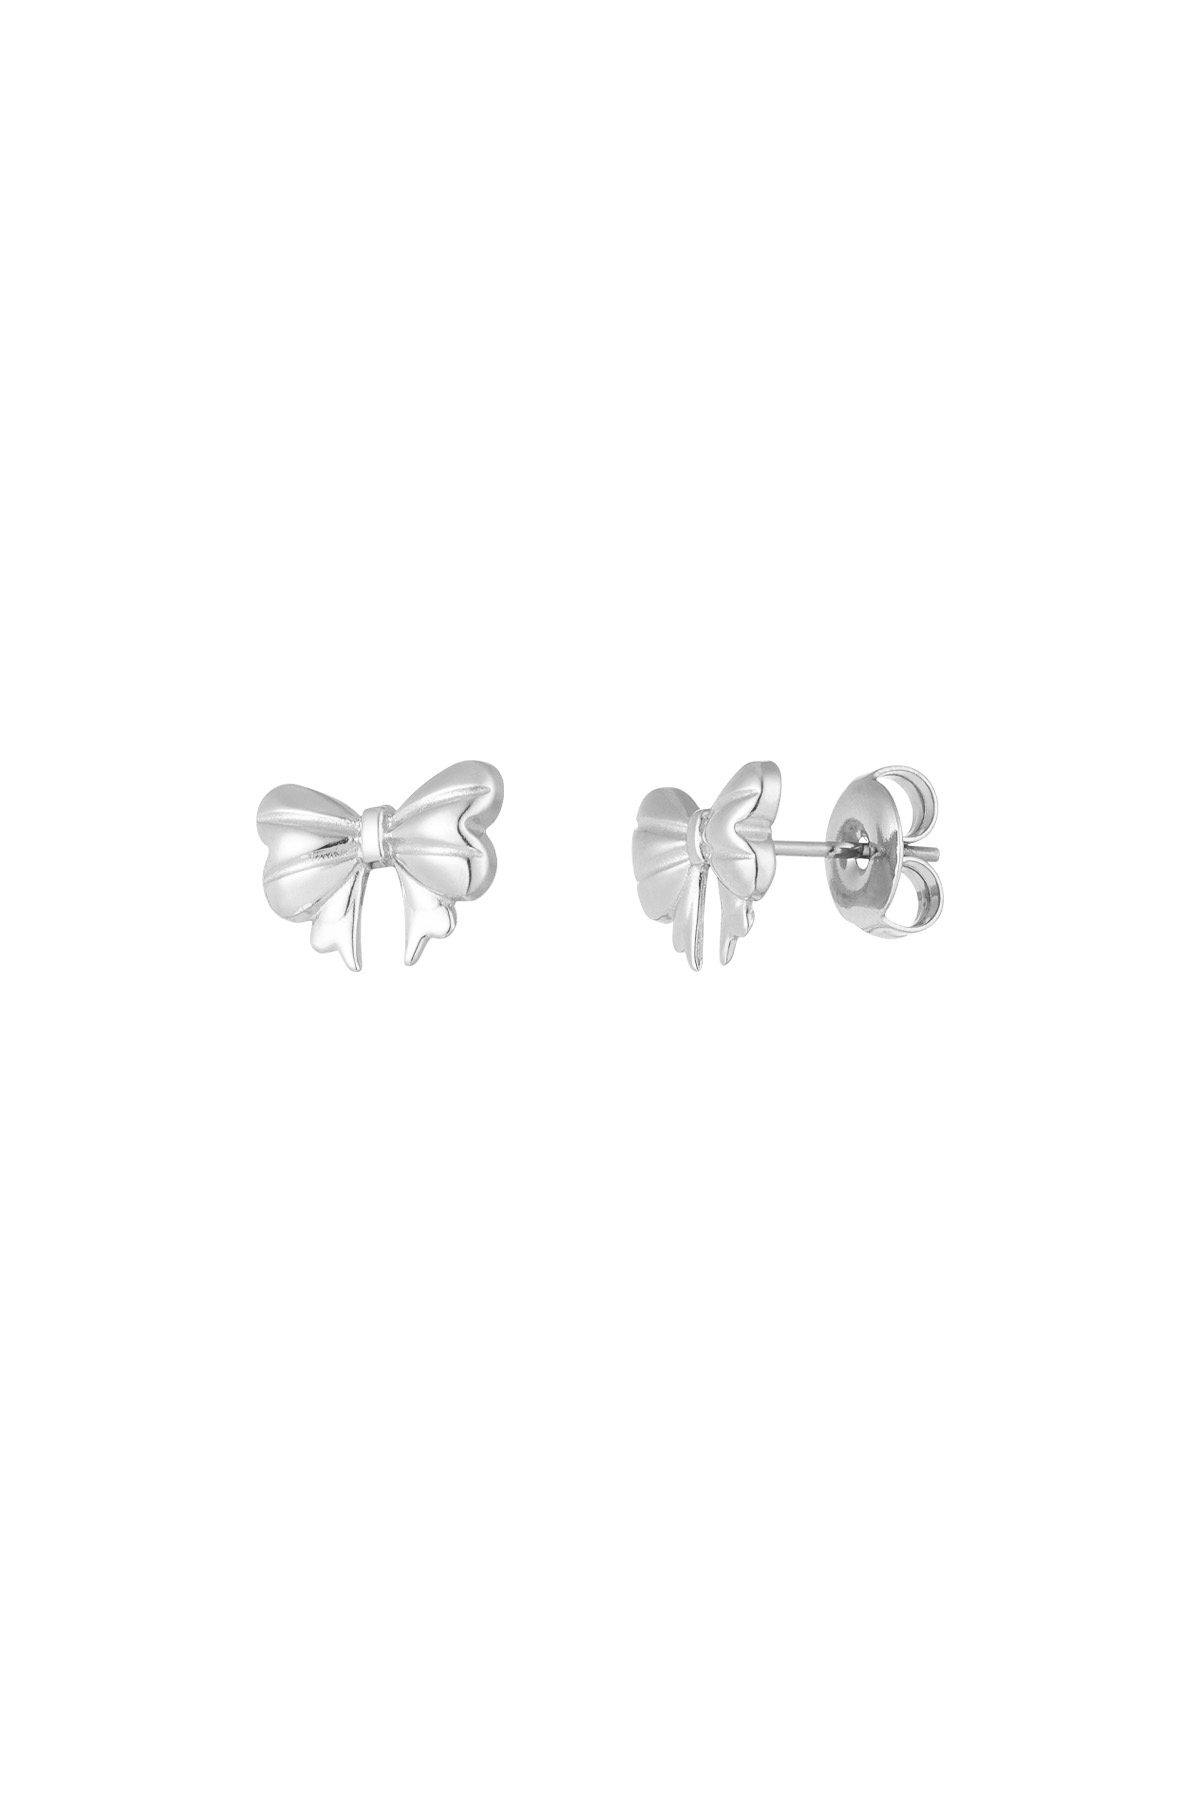 Ear studs cute bow - silver h5 